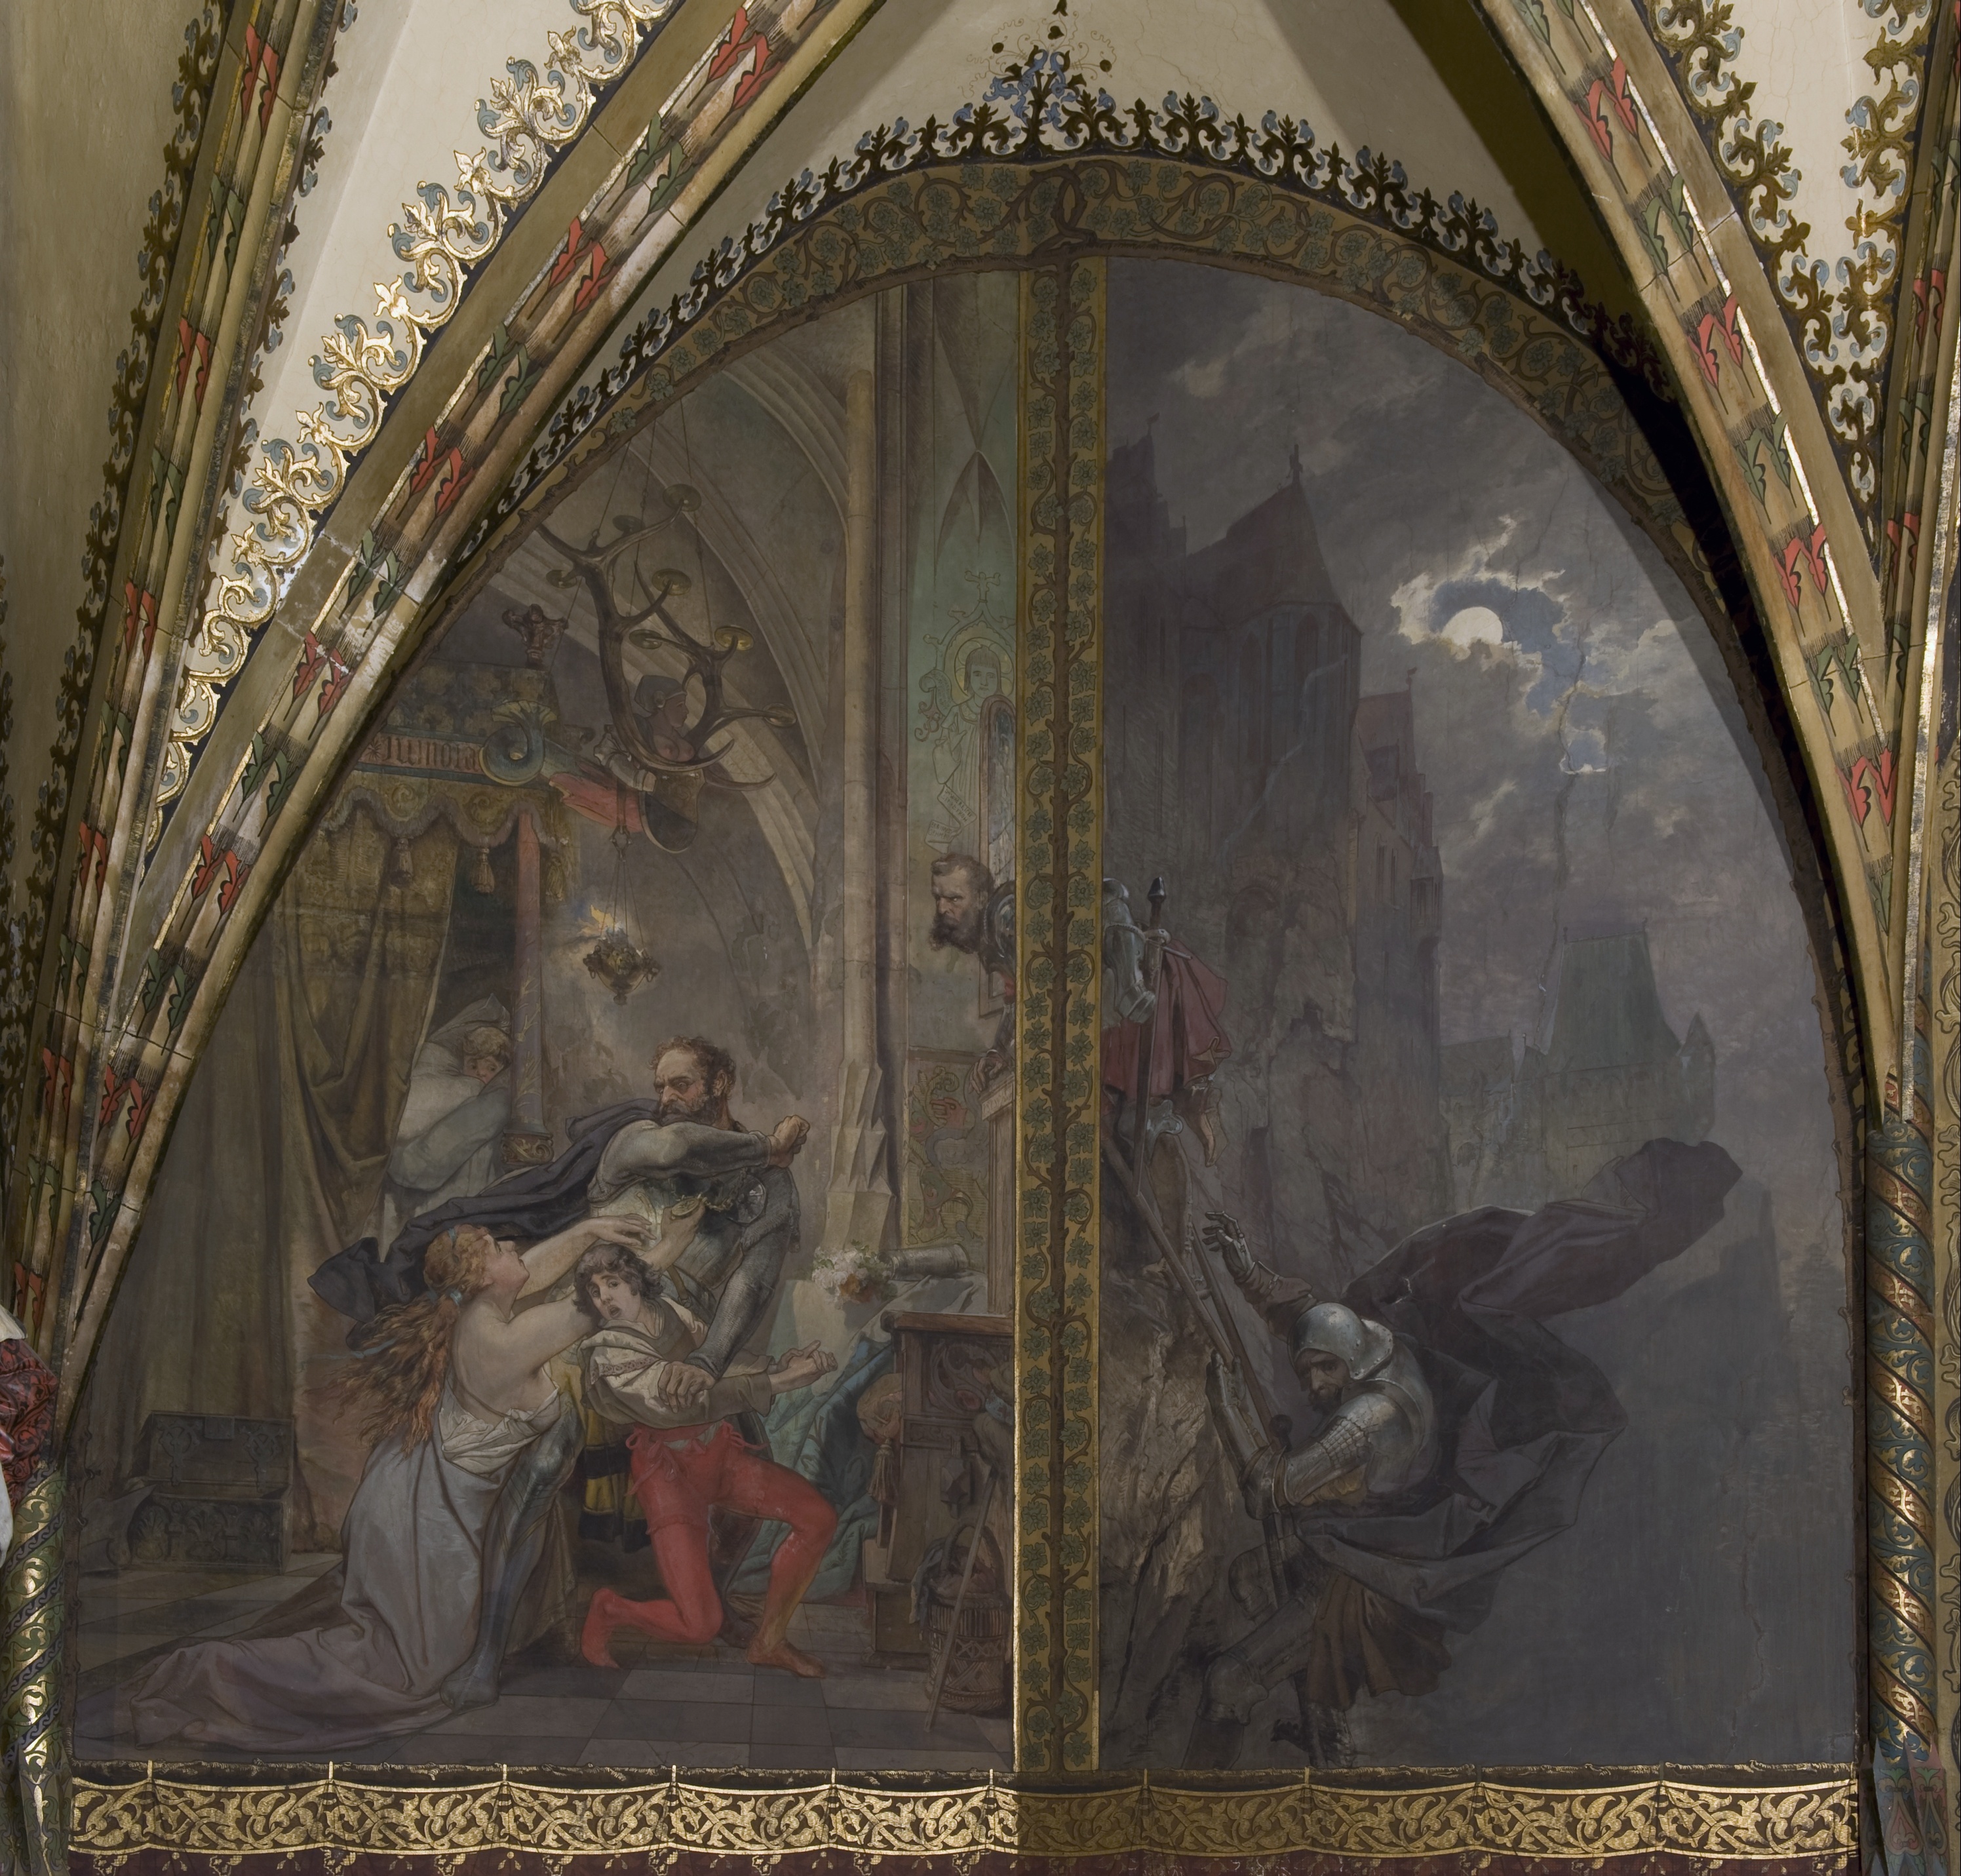 Wandbild:
"Der Altenburger Prinzenraub, 1455 - Teil 1: Der Raub der Prinzen aus dem Altenburger Schloss" (SBG gGmbH CC BY-NC-SA)